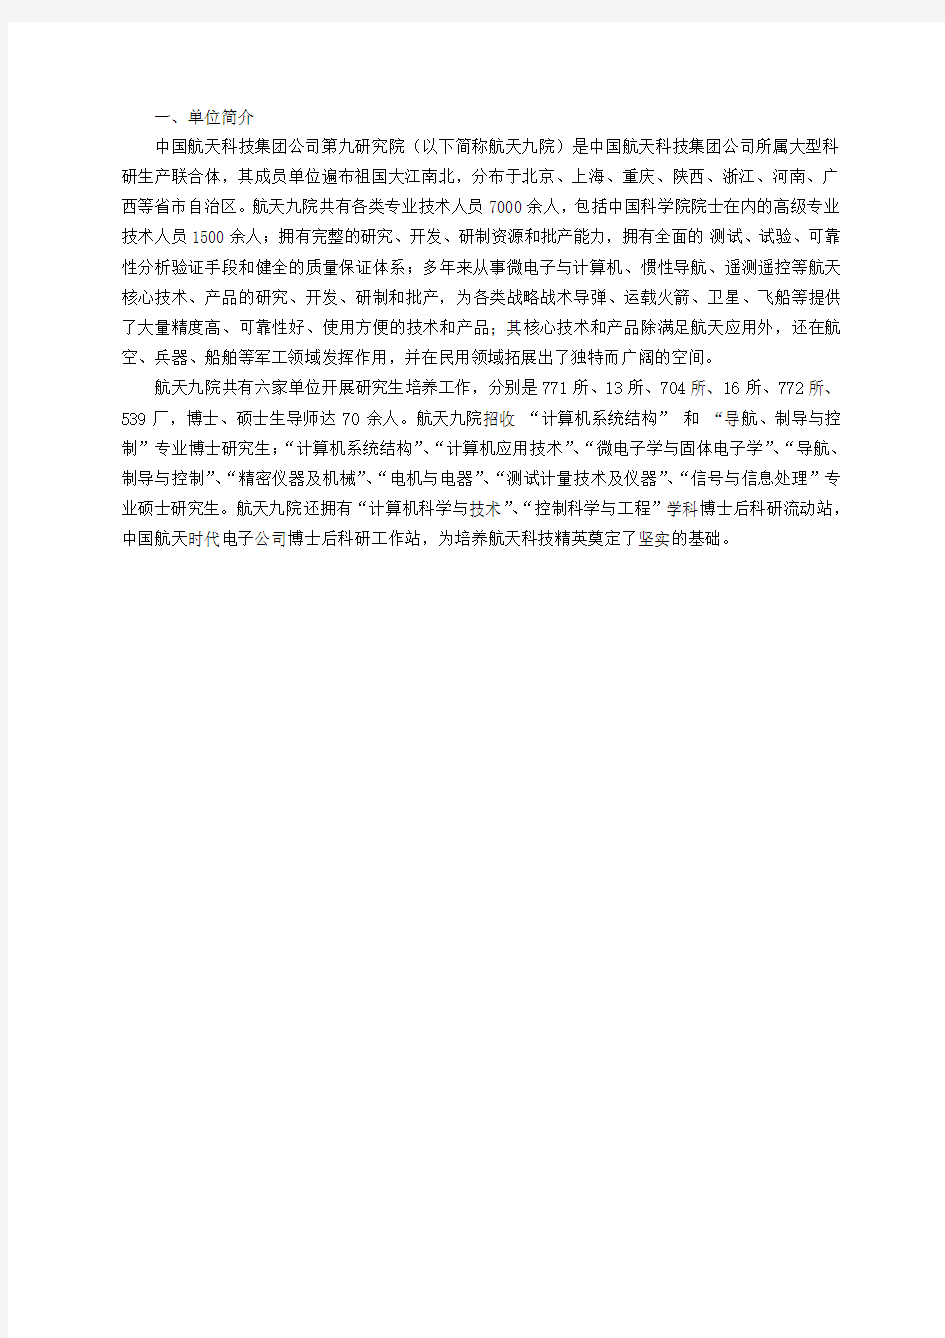 中国航天科技集团公司第九研究院